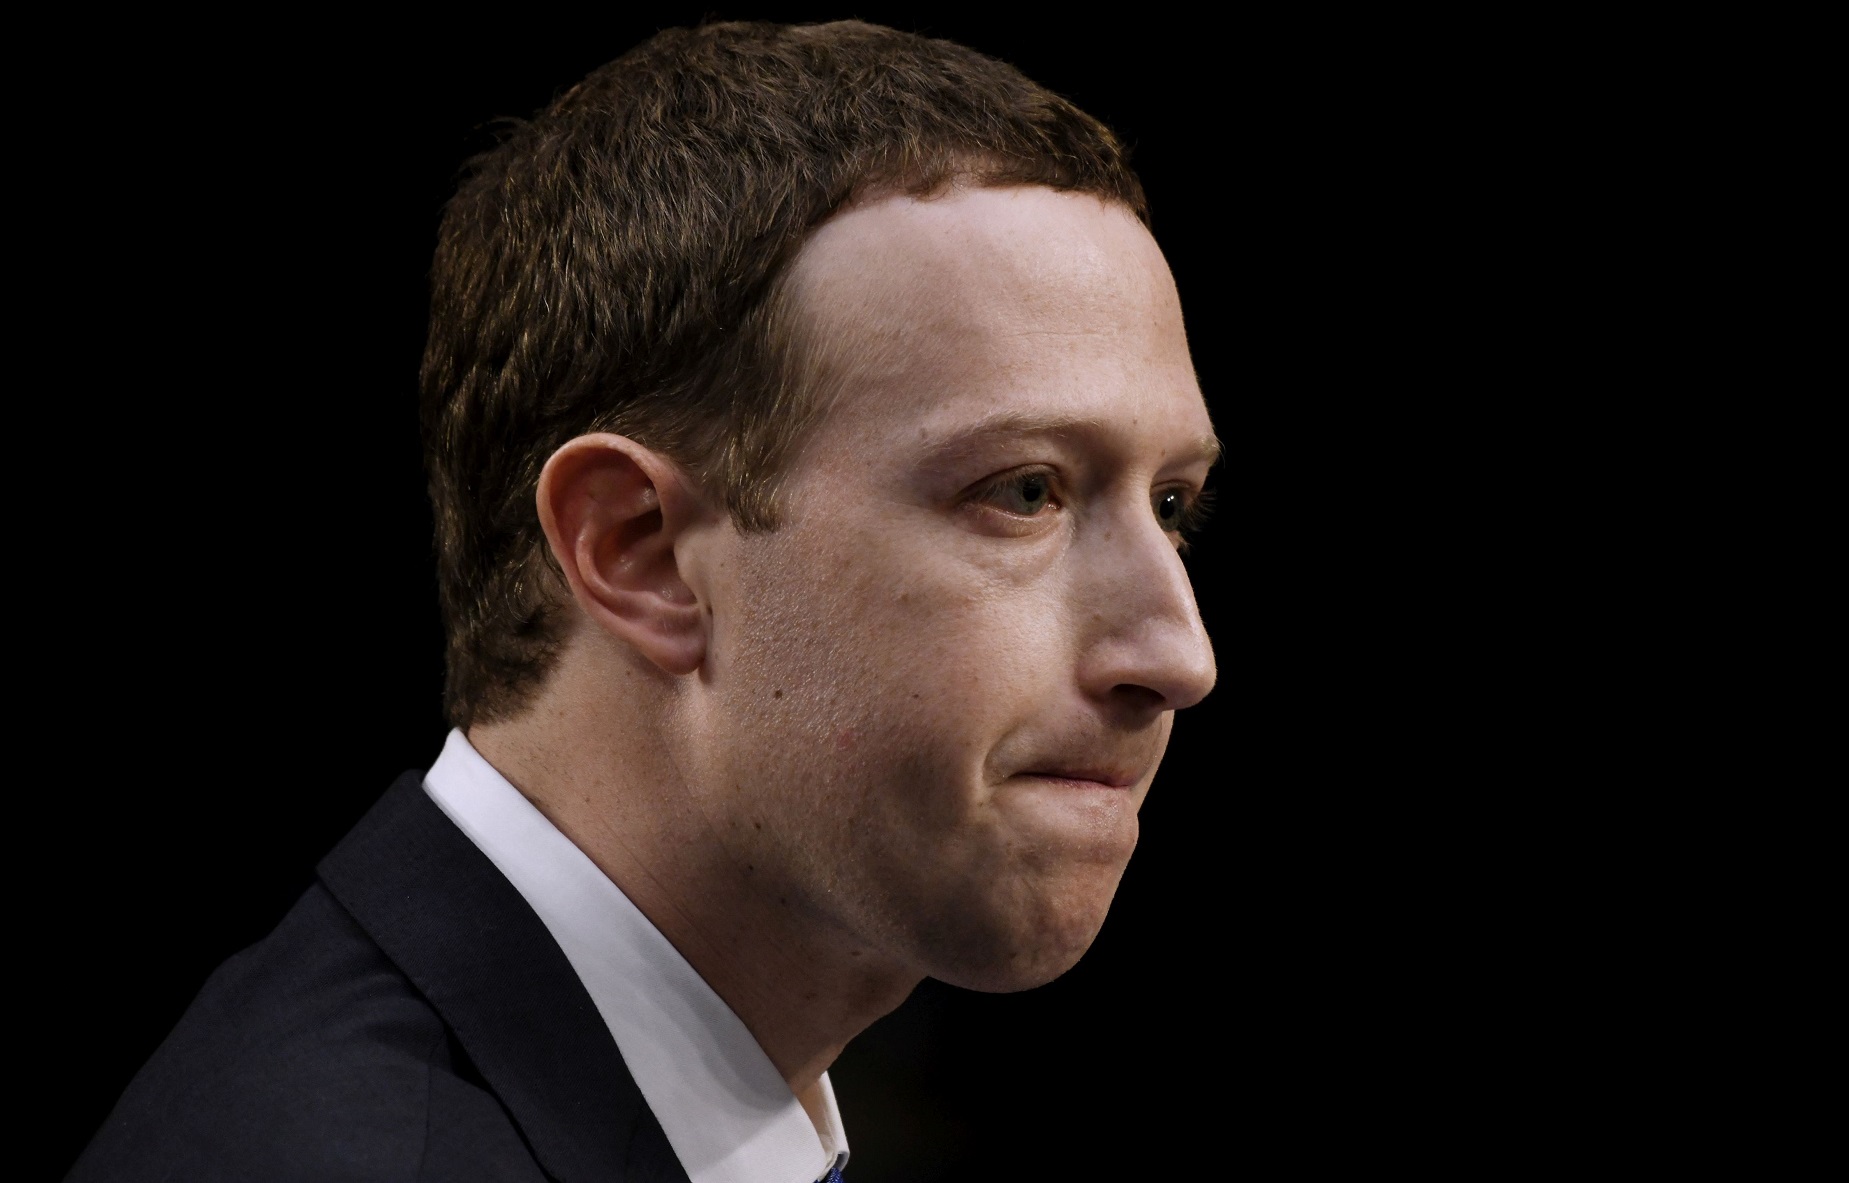 Internetul îl trollează grav pe Mark Zuckerberg şi nu ştii dacă să râzi sau să îţi fie milă de el